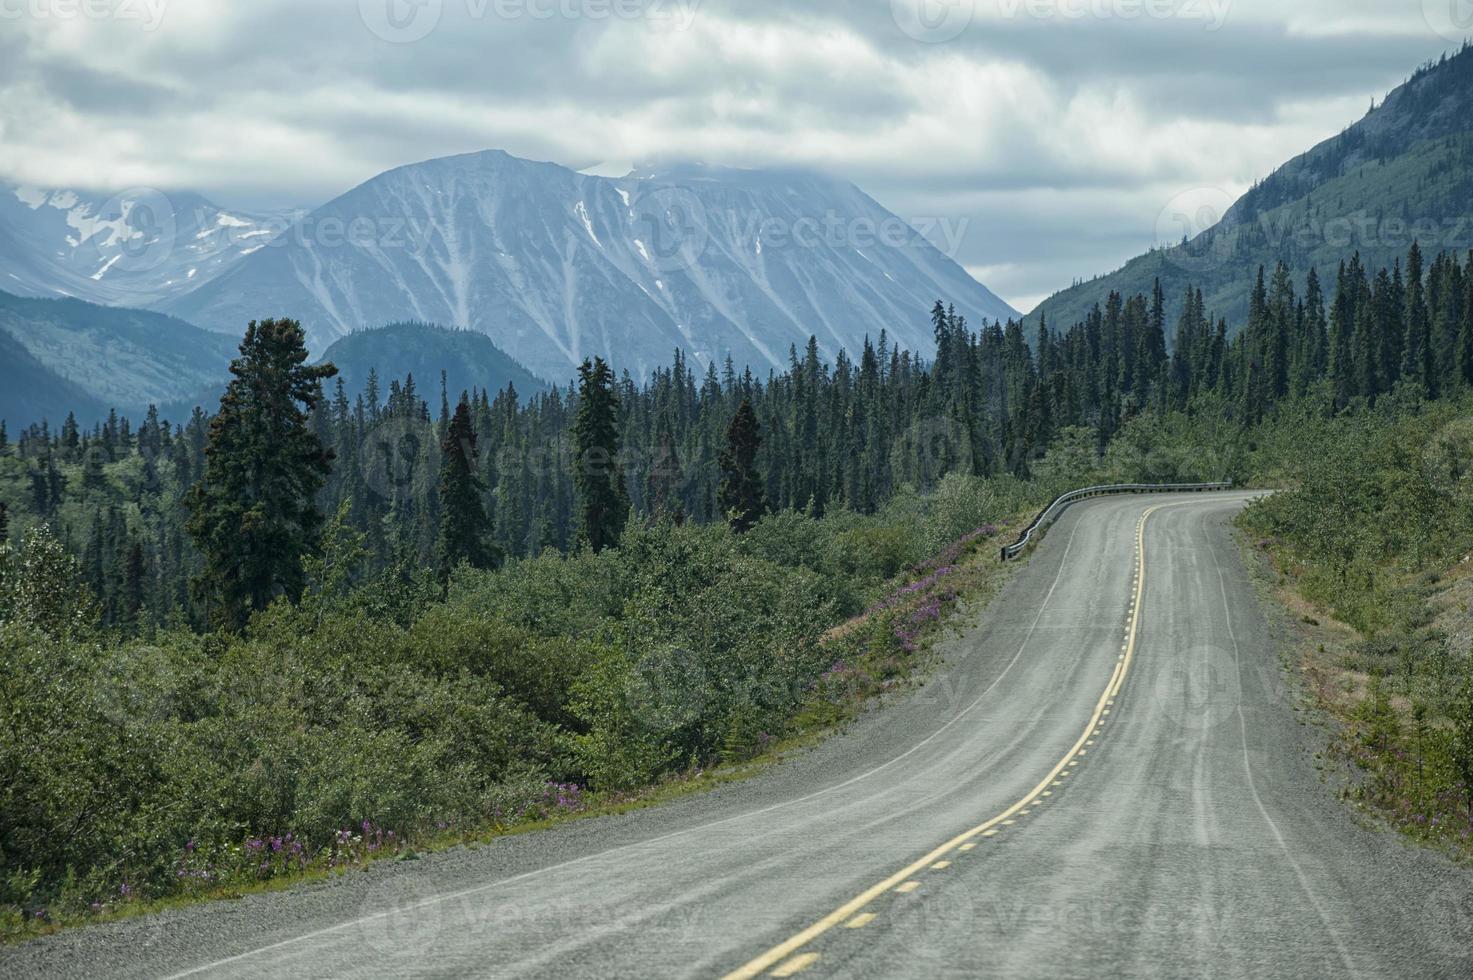 Brits Columbia wit voorbij gaan aan panorama foto